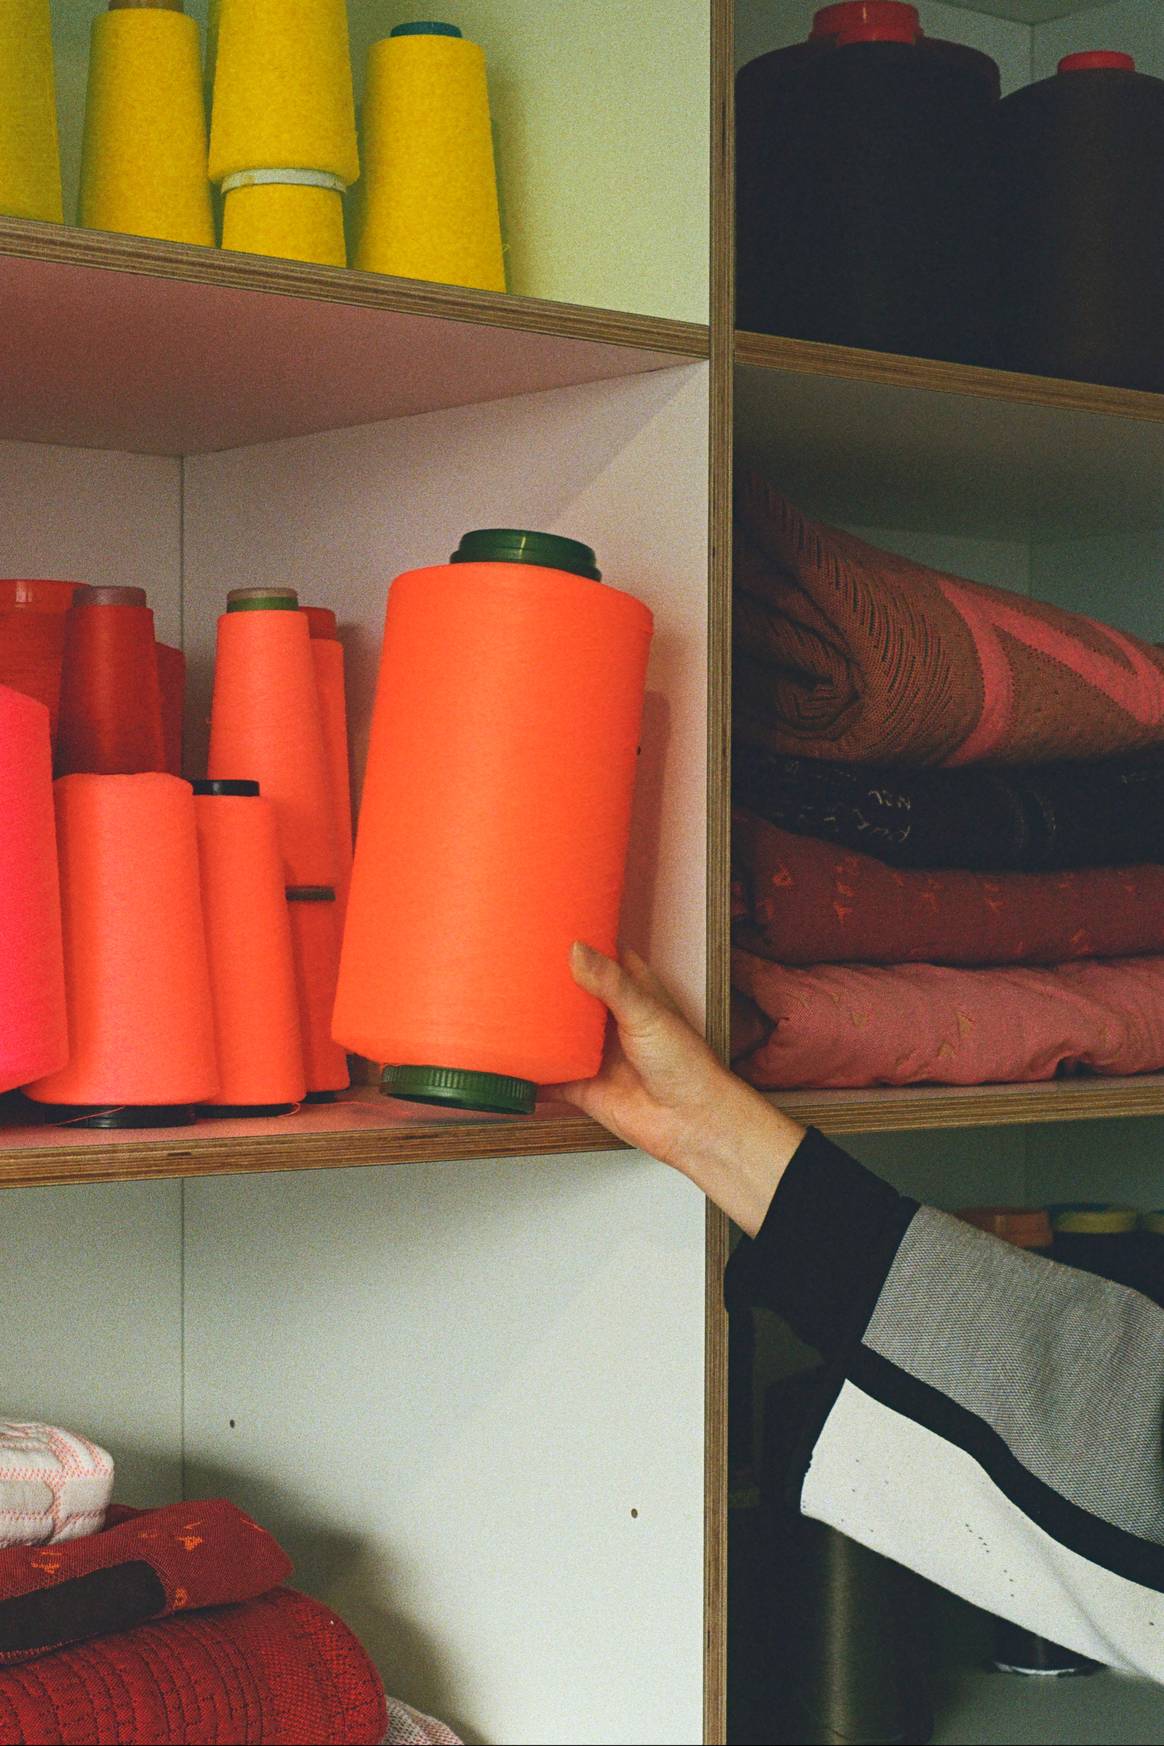 Hilos y tejidos de la empresa holandesa de innovación textil Byborre. Propiedad: ByBorre